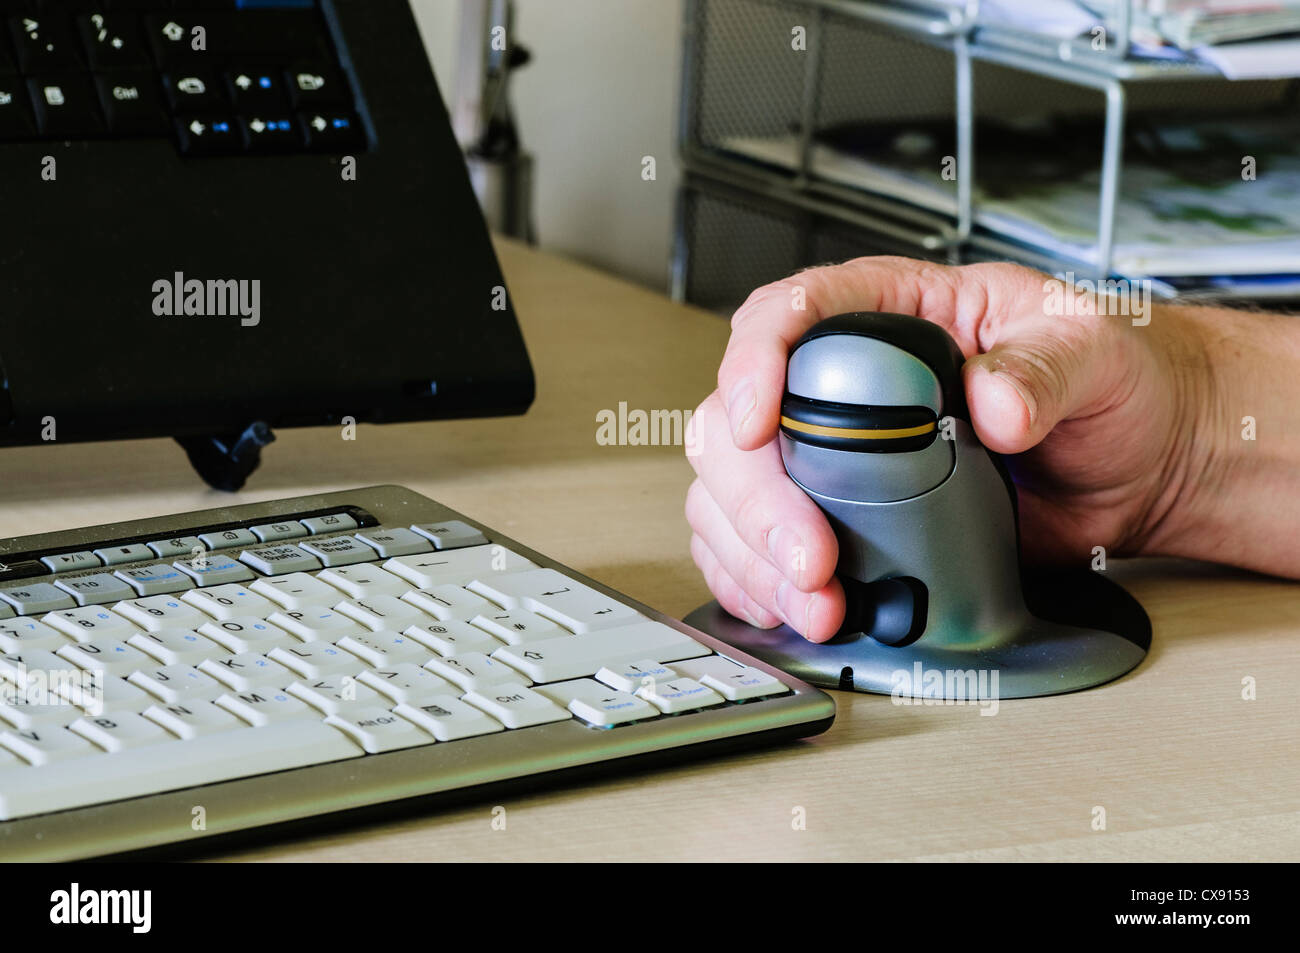 El hombre utiliza un pingüino vertical del ratón del ordenador ergonómico para personas con dolor de muñeca Foto de stock